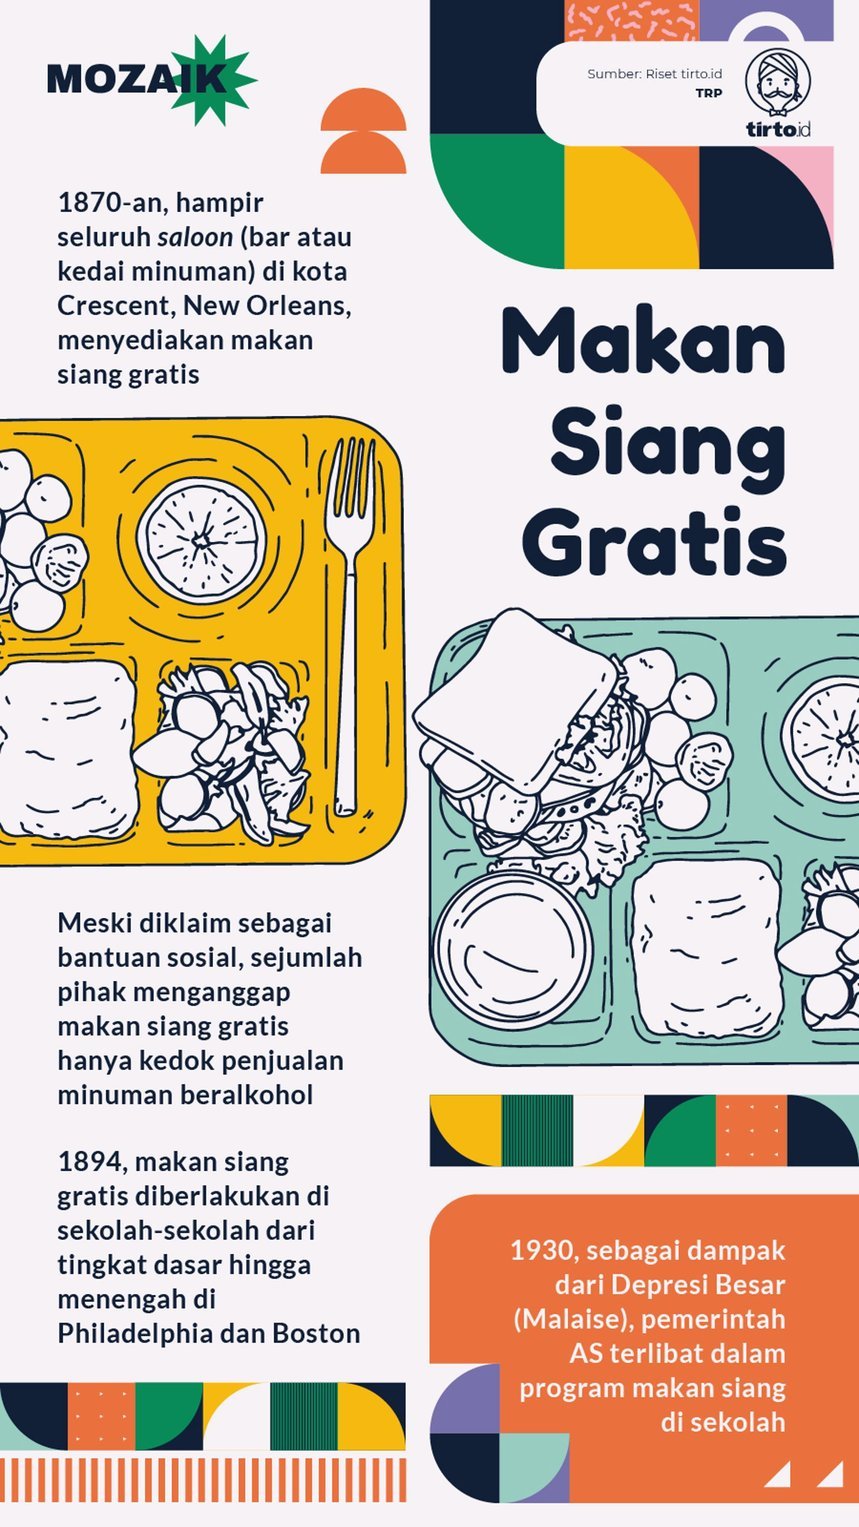 Infografik Mozaik Makan siang gratis